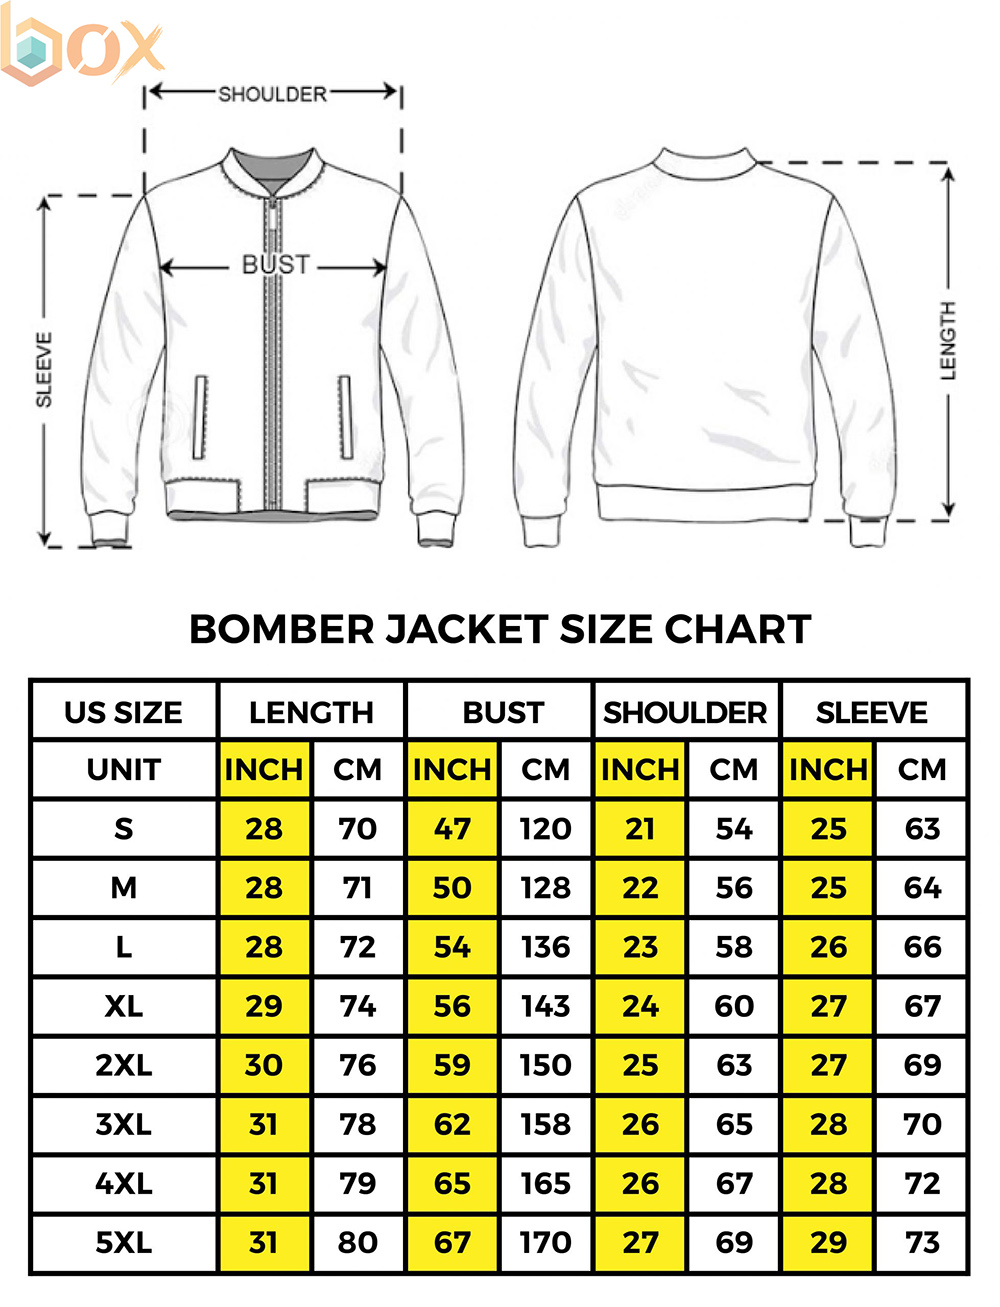 Bomber Jacket Size Chart: